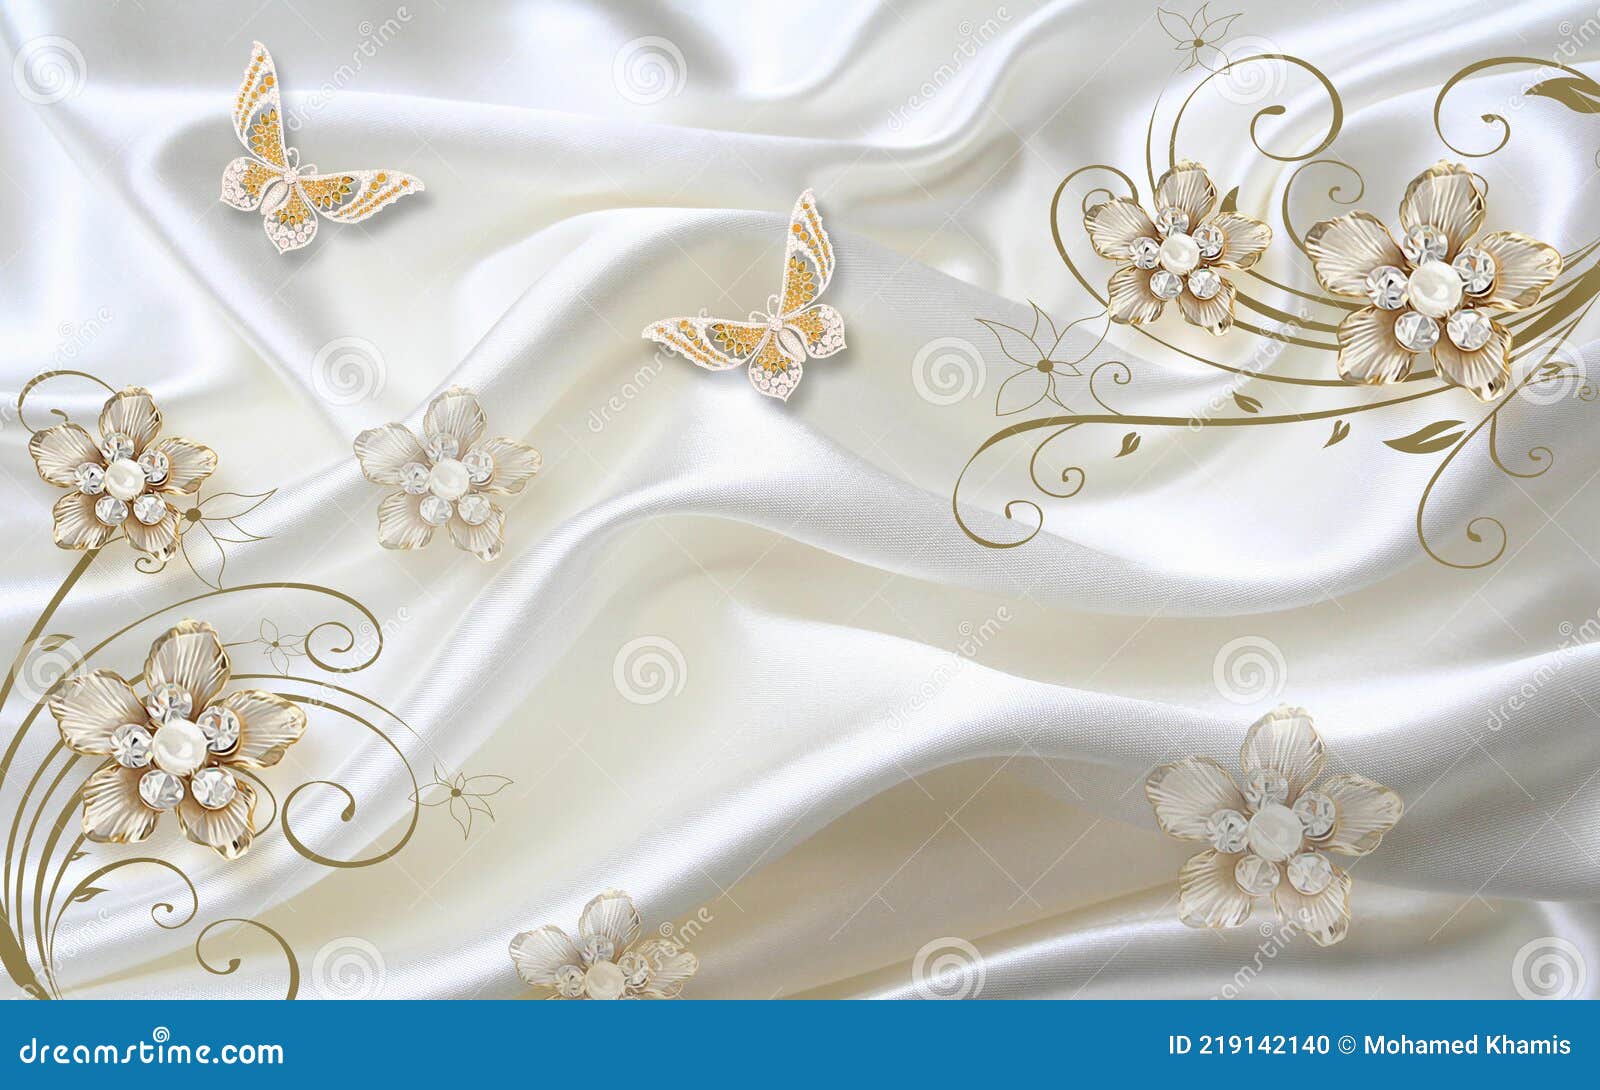 3d Fondo De Pantalla Flores Y Mariposas Doradas Sobre Un Fondo De Seda  Blanca Stock de ilustración - Ilustración de fondo, flores: 219142140